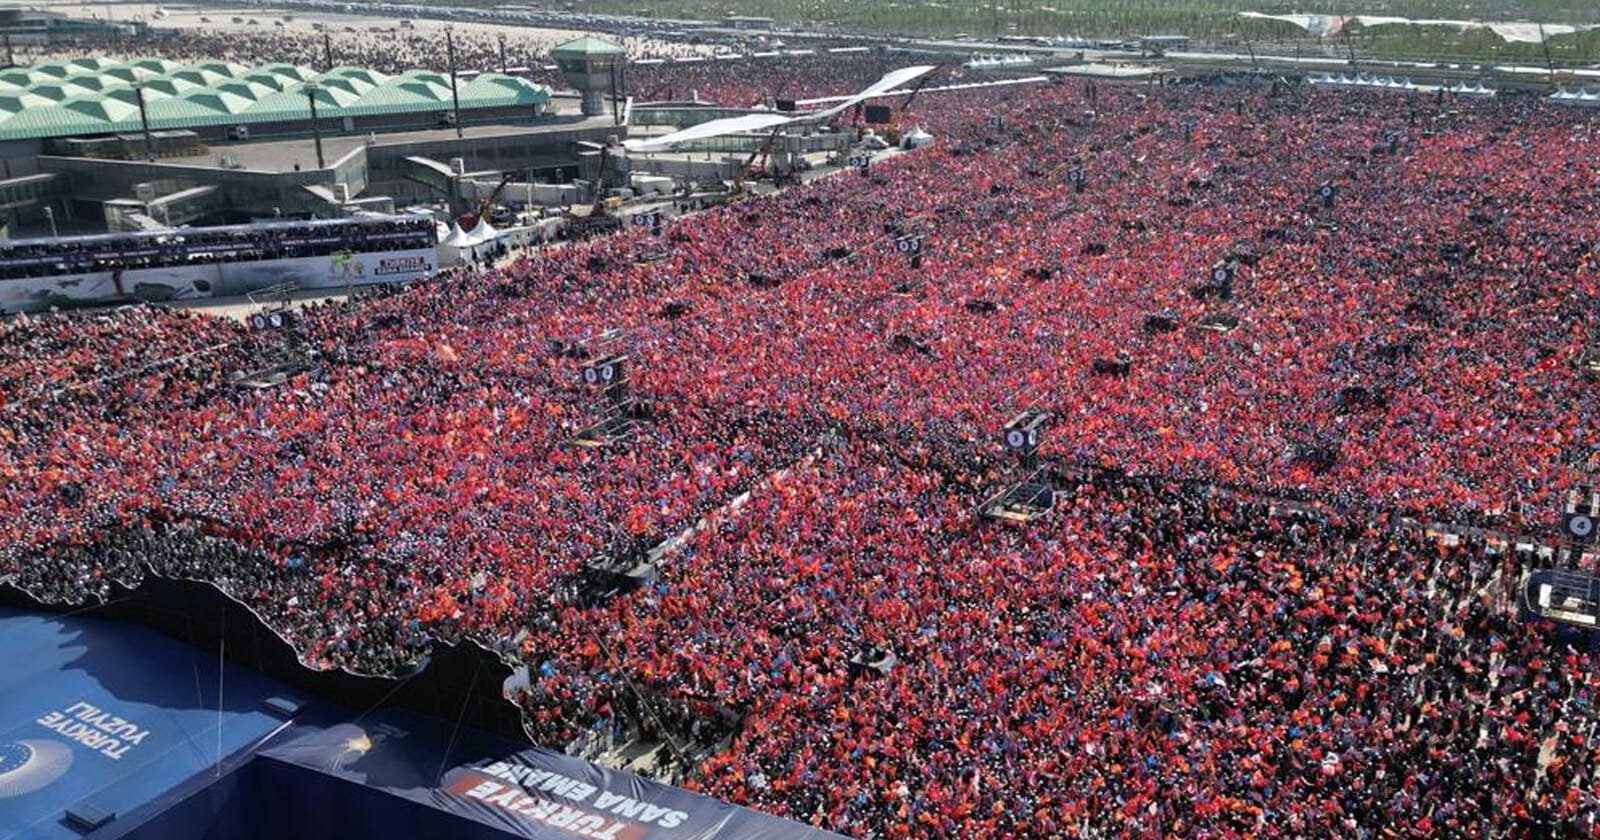 تجمع بشري مهول دعما لأردوغان في إسطنبول watanserb.com